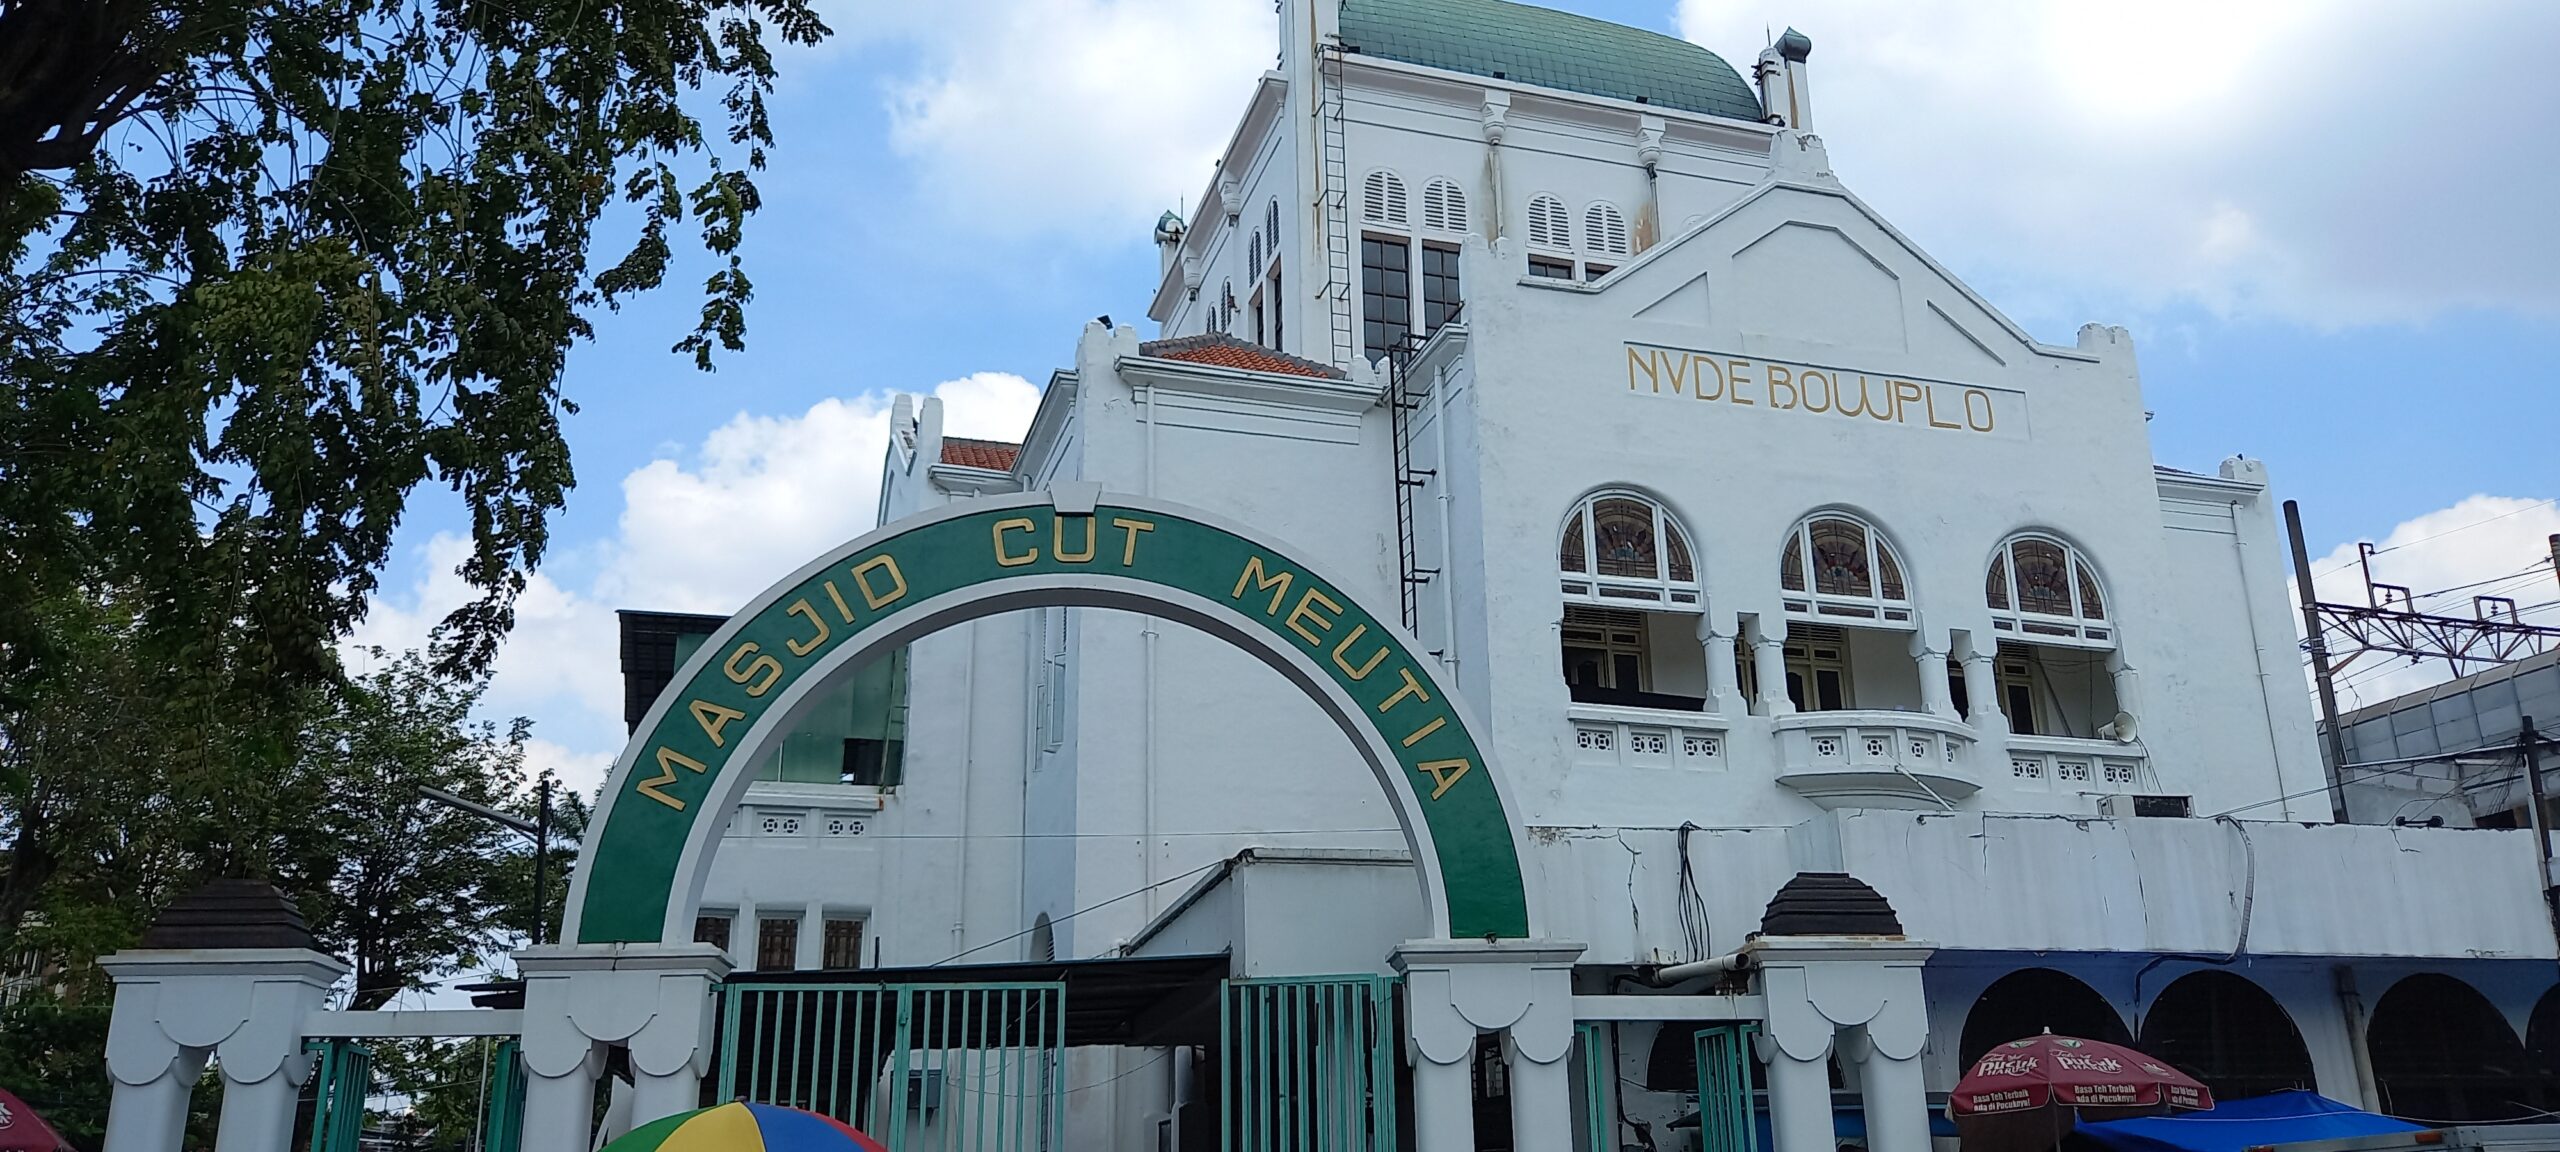 Masjid Cut Meutia - Dari Masjid Membangun Indonesia